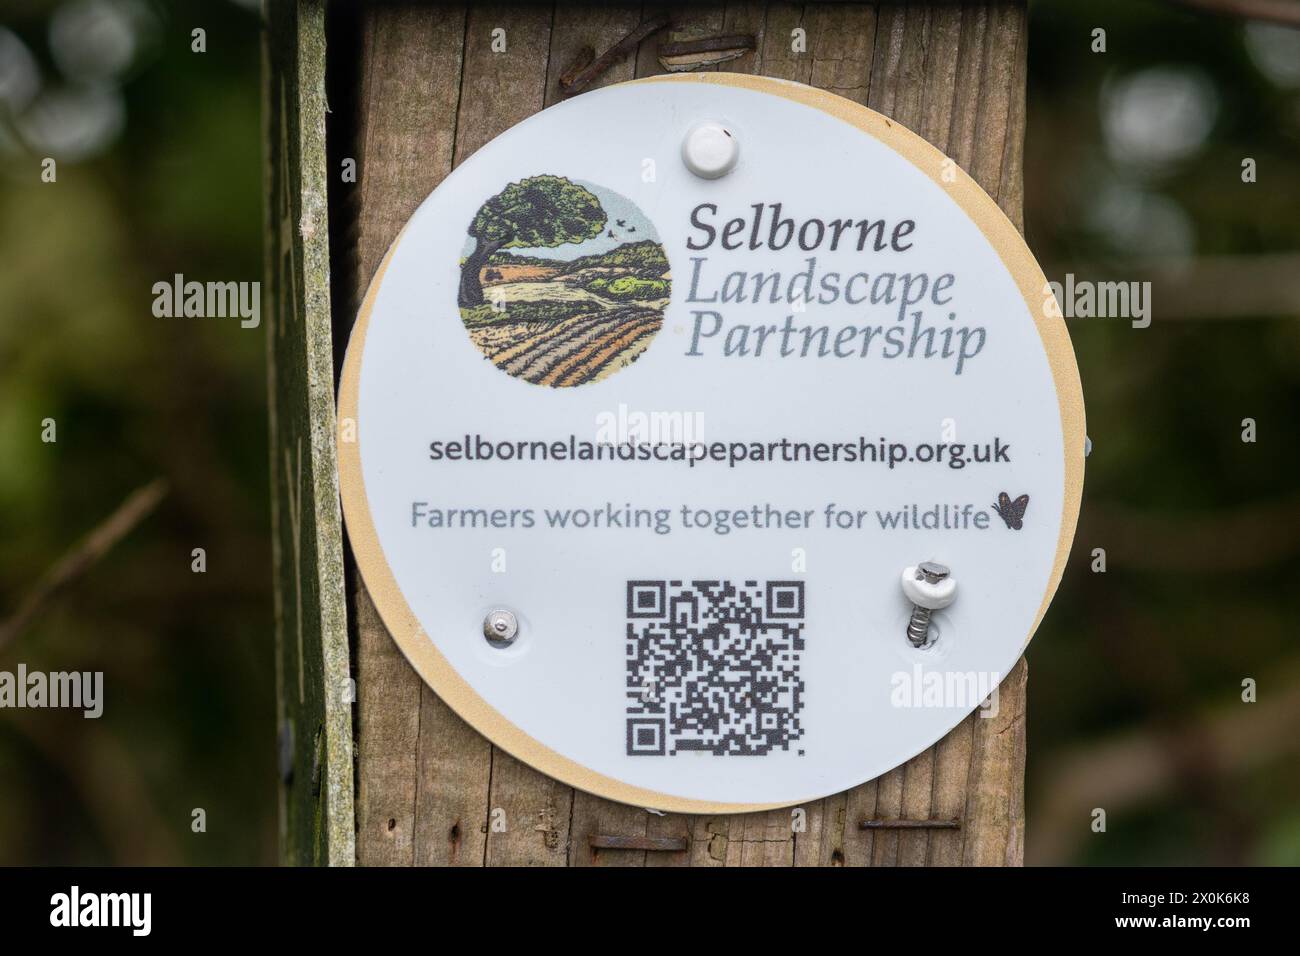 Signature ou plaque du partenariat paysager de Selborne sur un poteau de clôture, Hampshire, Angleterre, Royaume-Uni - un groupe d'agriculteurs et de défenseurs de l'environnement restaurant la campagne Banque D'Images